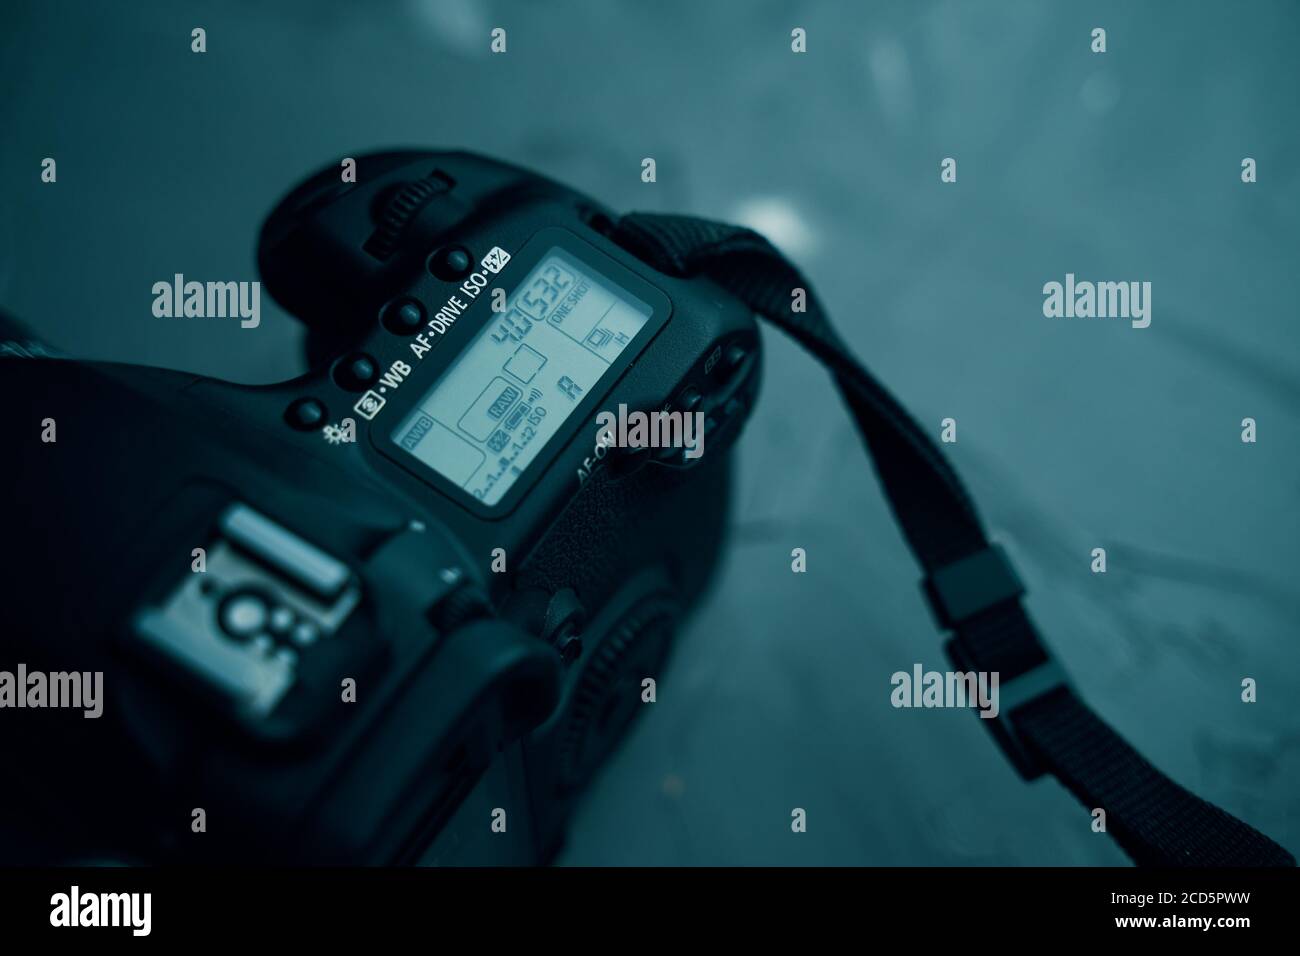 Top Display der Canon Kamera. Abgewinkelte Ansicht von oben nach unten, Anzeige über dem Bildschirm und den Bedienelementen. Bischkek, Kirgisistan - 17. Dezember 2019. Stockfoto